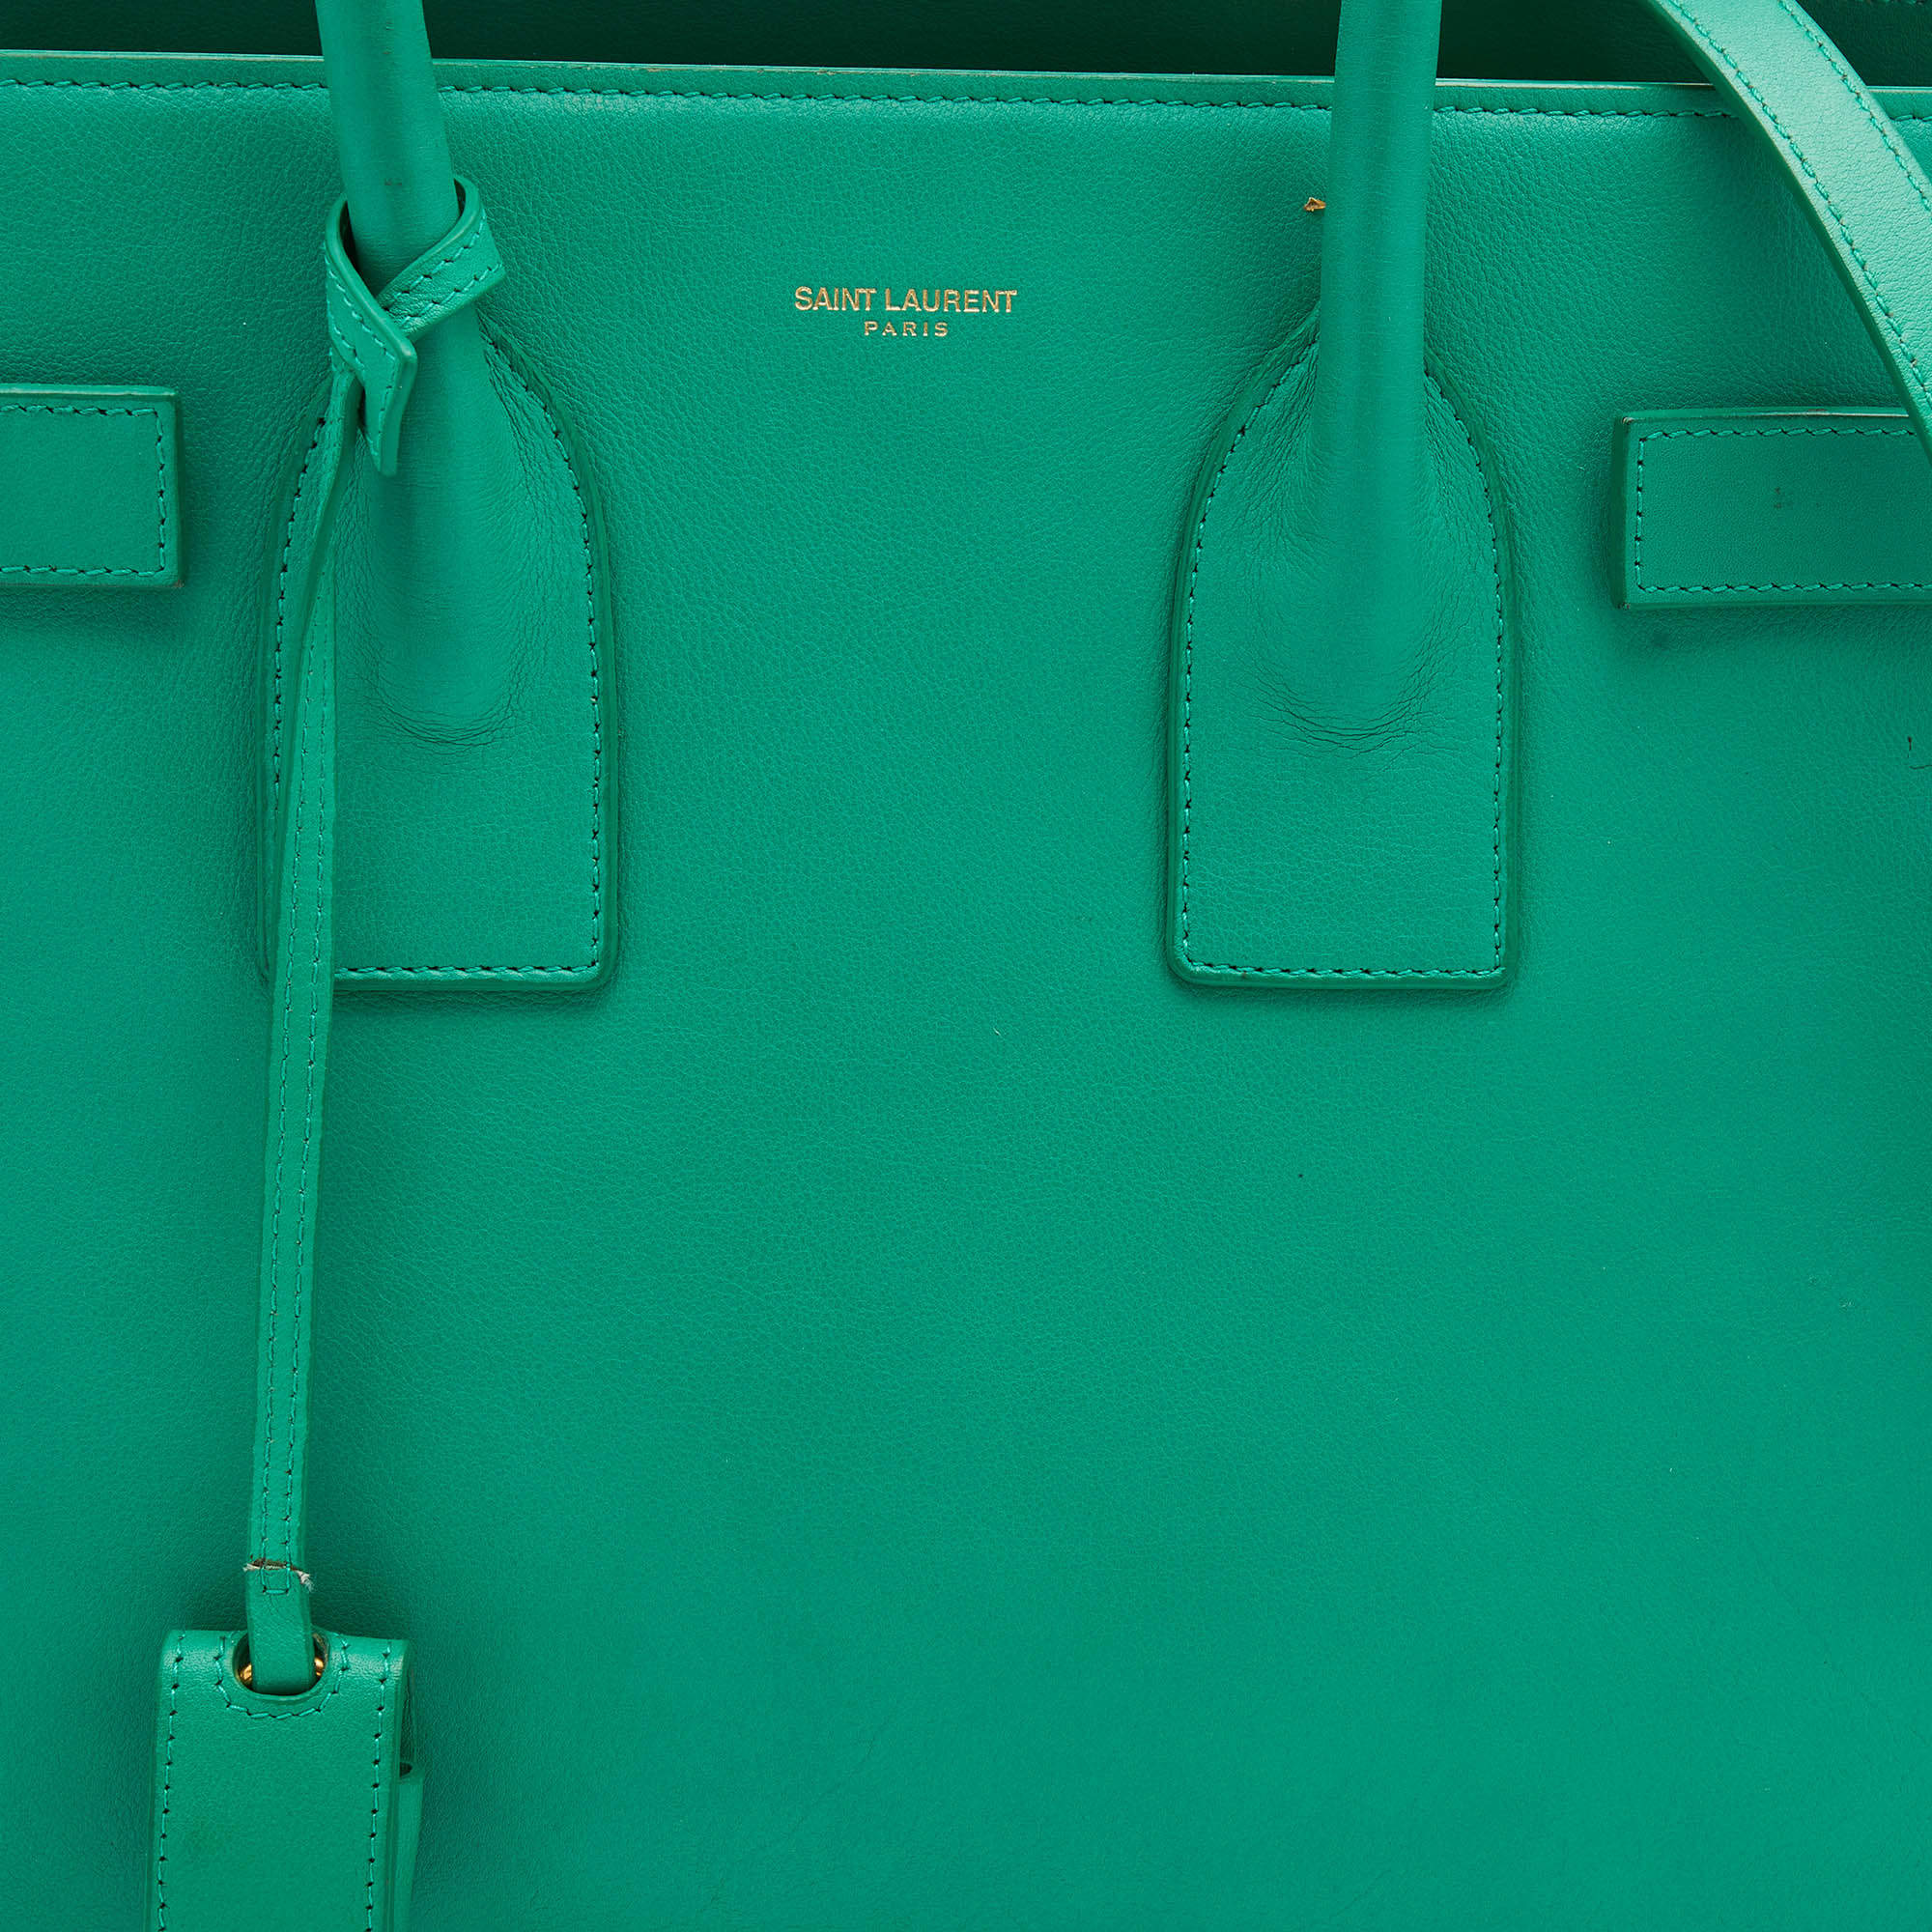 Saint Laurent Yves Saint Laurent Small Sac De Jour - Green Totes, Handbags  - SNT277937